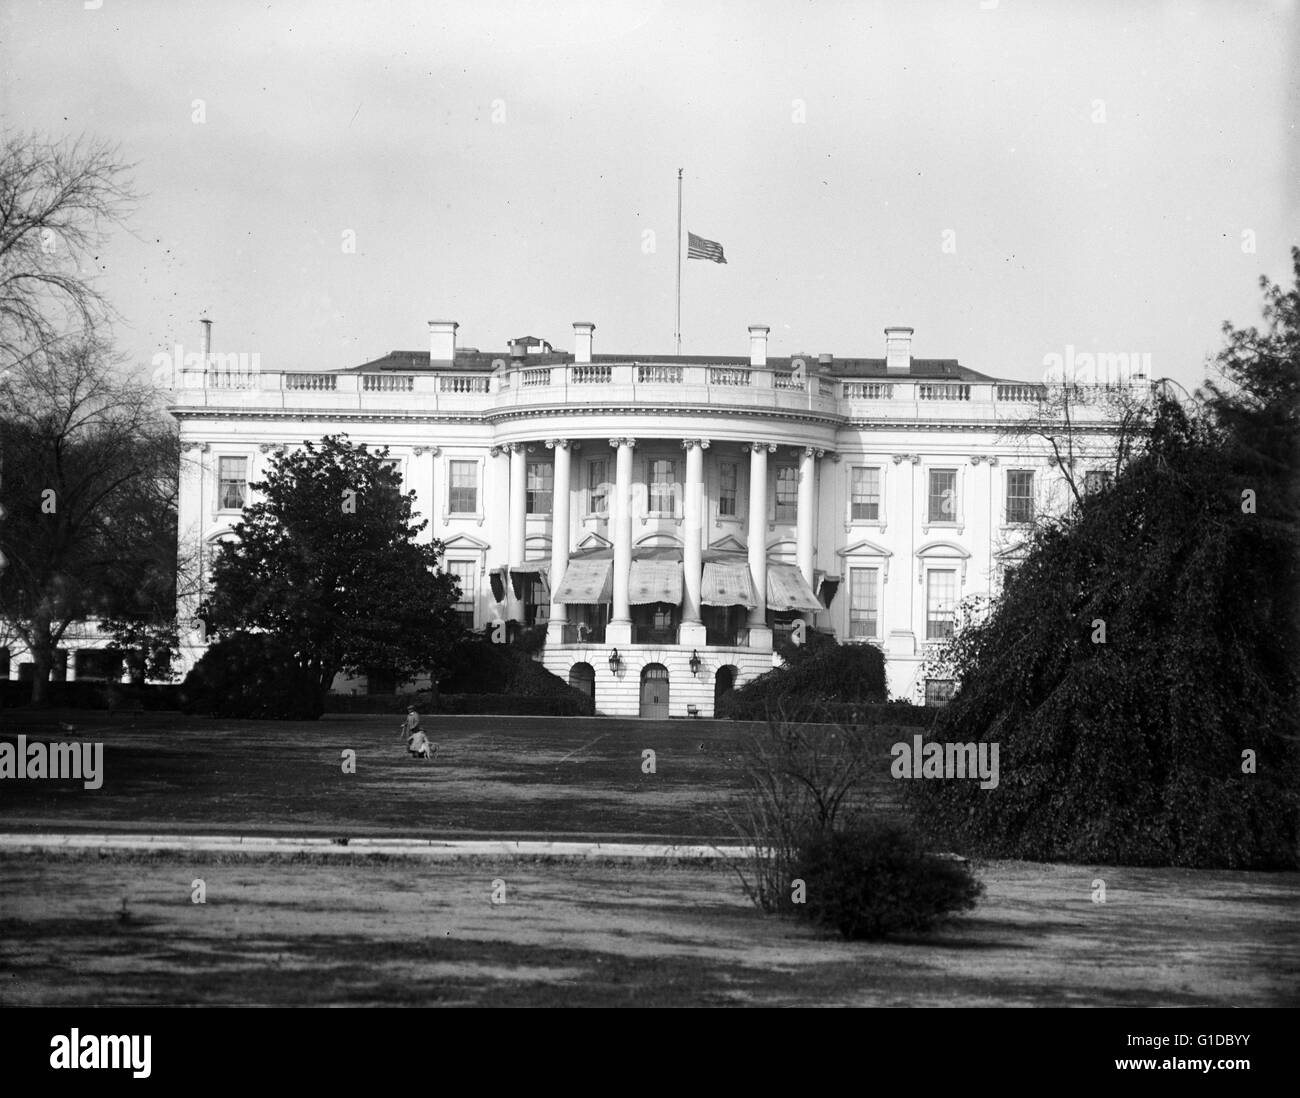 Maison blanche drapeau en berne. Le drapeau sur la Maison Blanche est mis en berne, sauf à l'occasion de la mort du président ou d'un ex-président. le drapeau volant bas en 1929 a été en ce qui a trait à la fin Secrétaire de la guerre. William James Bon (24 septembre 1866 - 18 novembre 1929) était un homme politique américain de l'état de l'Iowa, qui a servi à la Chambre des représentants des États-Unis et le Cabinet du Président Herbert Hoover en tant que secrétaire de la guerre. Banque D'Images